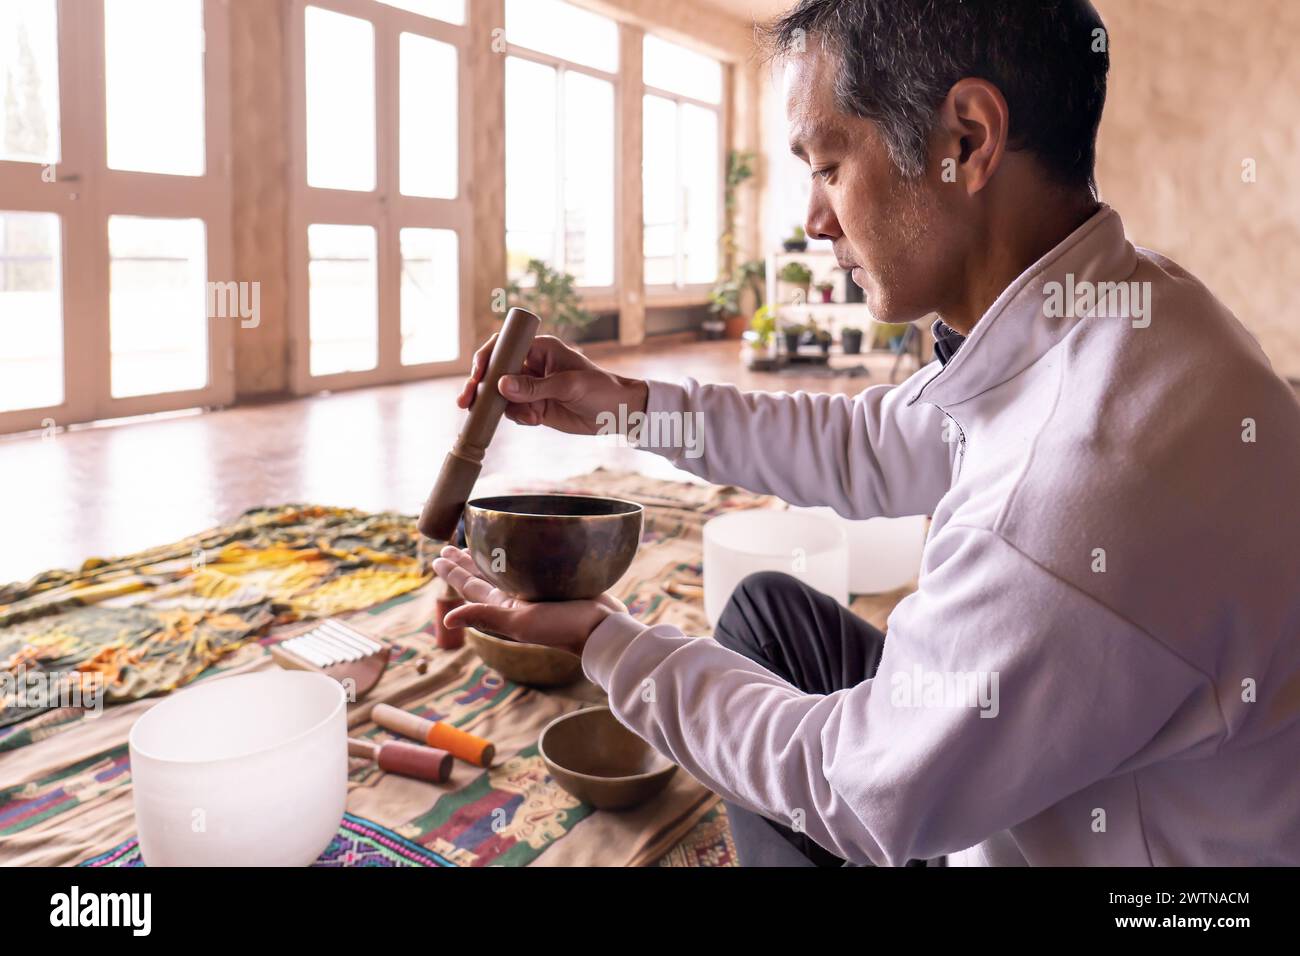 Ein asiatischer Mann mittleren Alters sitzt im Profil und konzentriert sich auf sanfte Vibrationen einer Messingschale in einem sanft beleuchteten Raum. Antike Praxis der Klangmeditation in Stockfoto